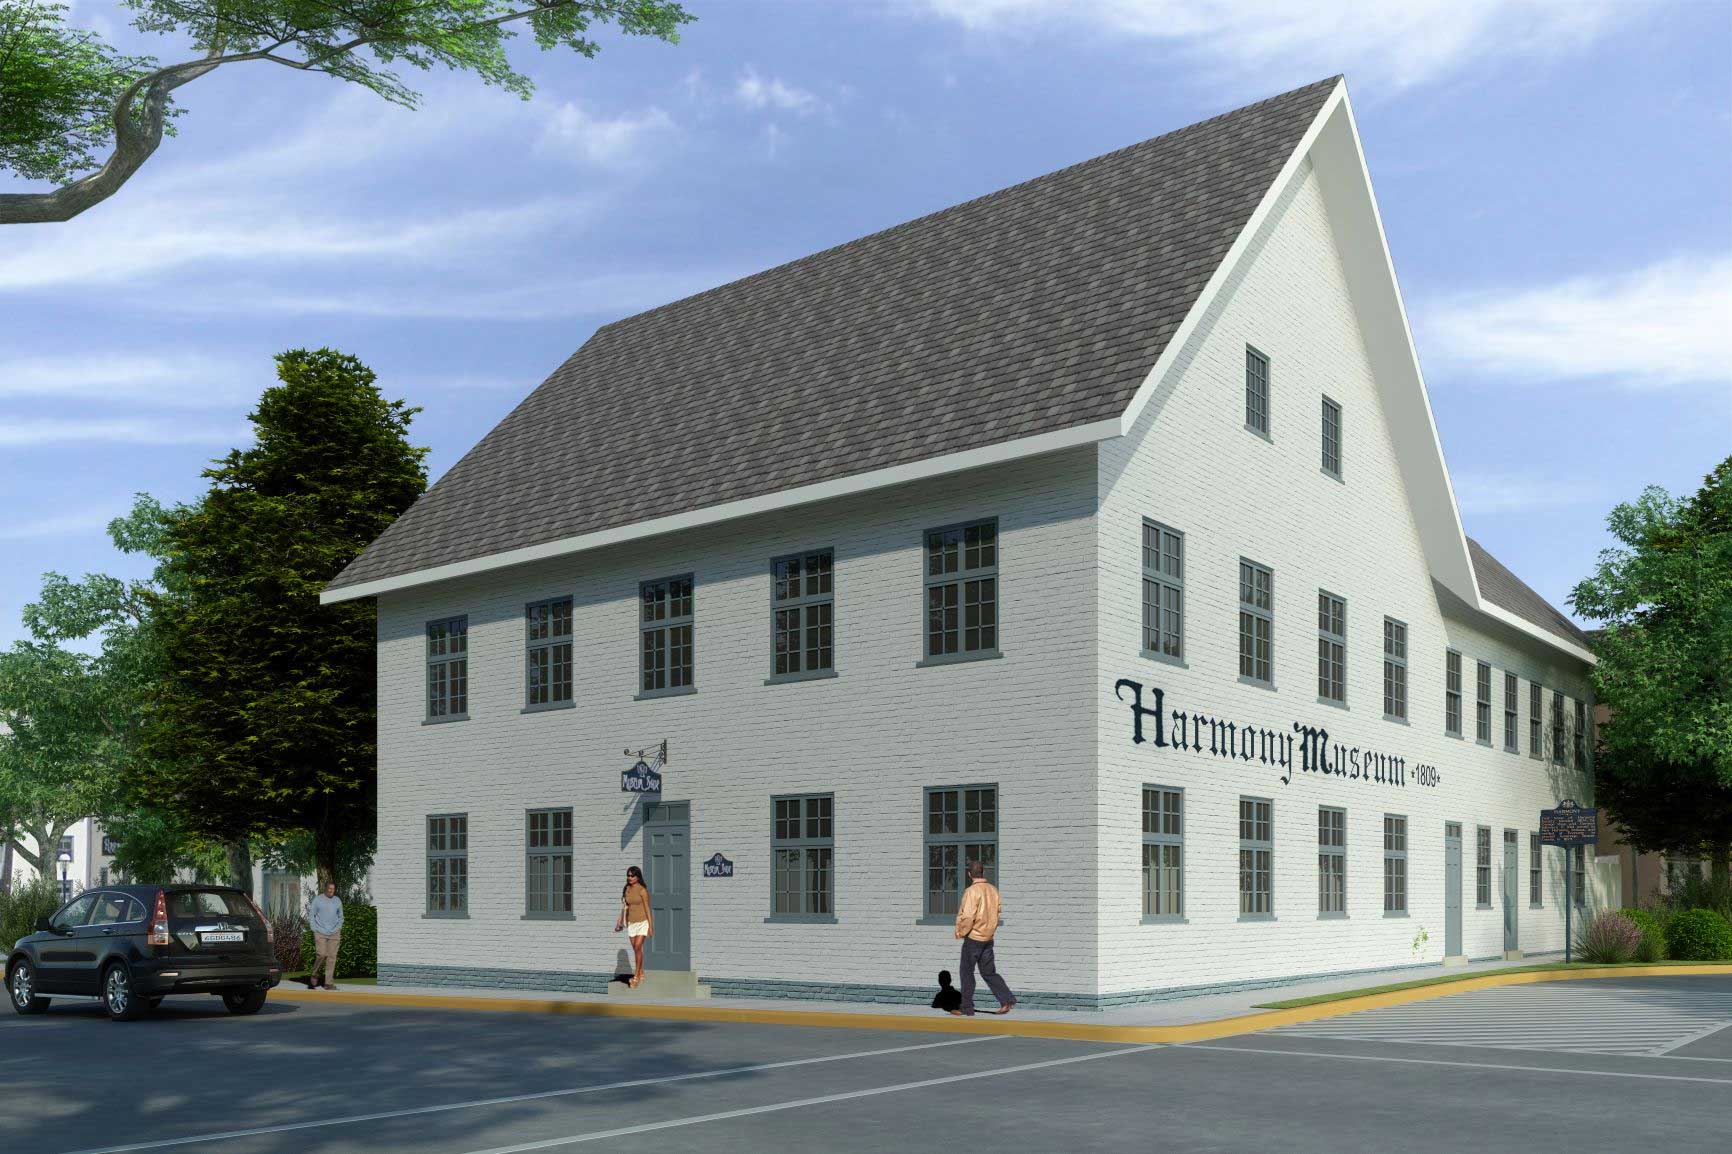 Historic Harmony Museum